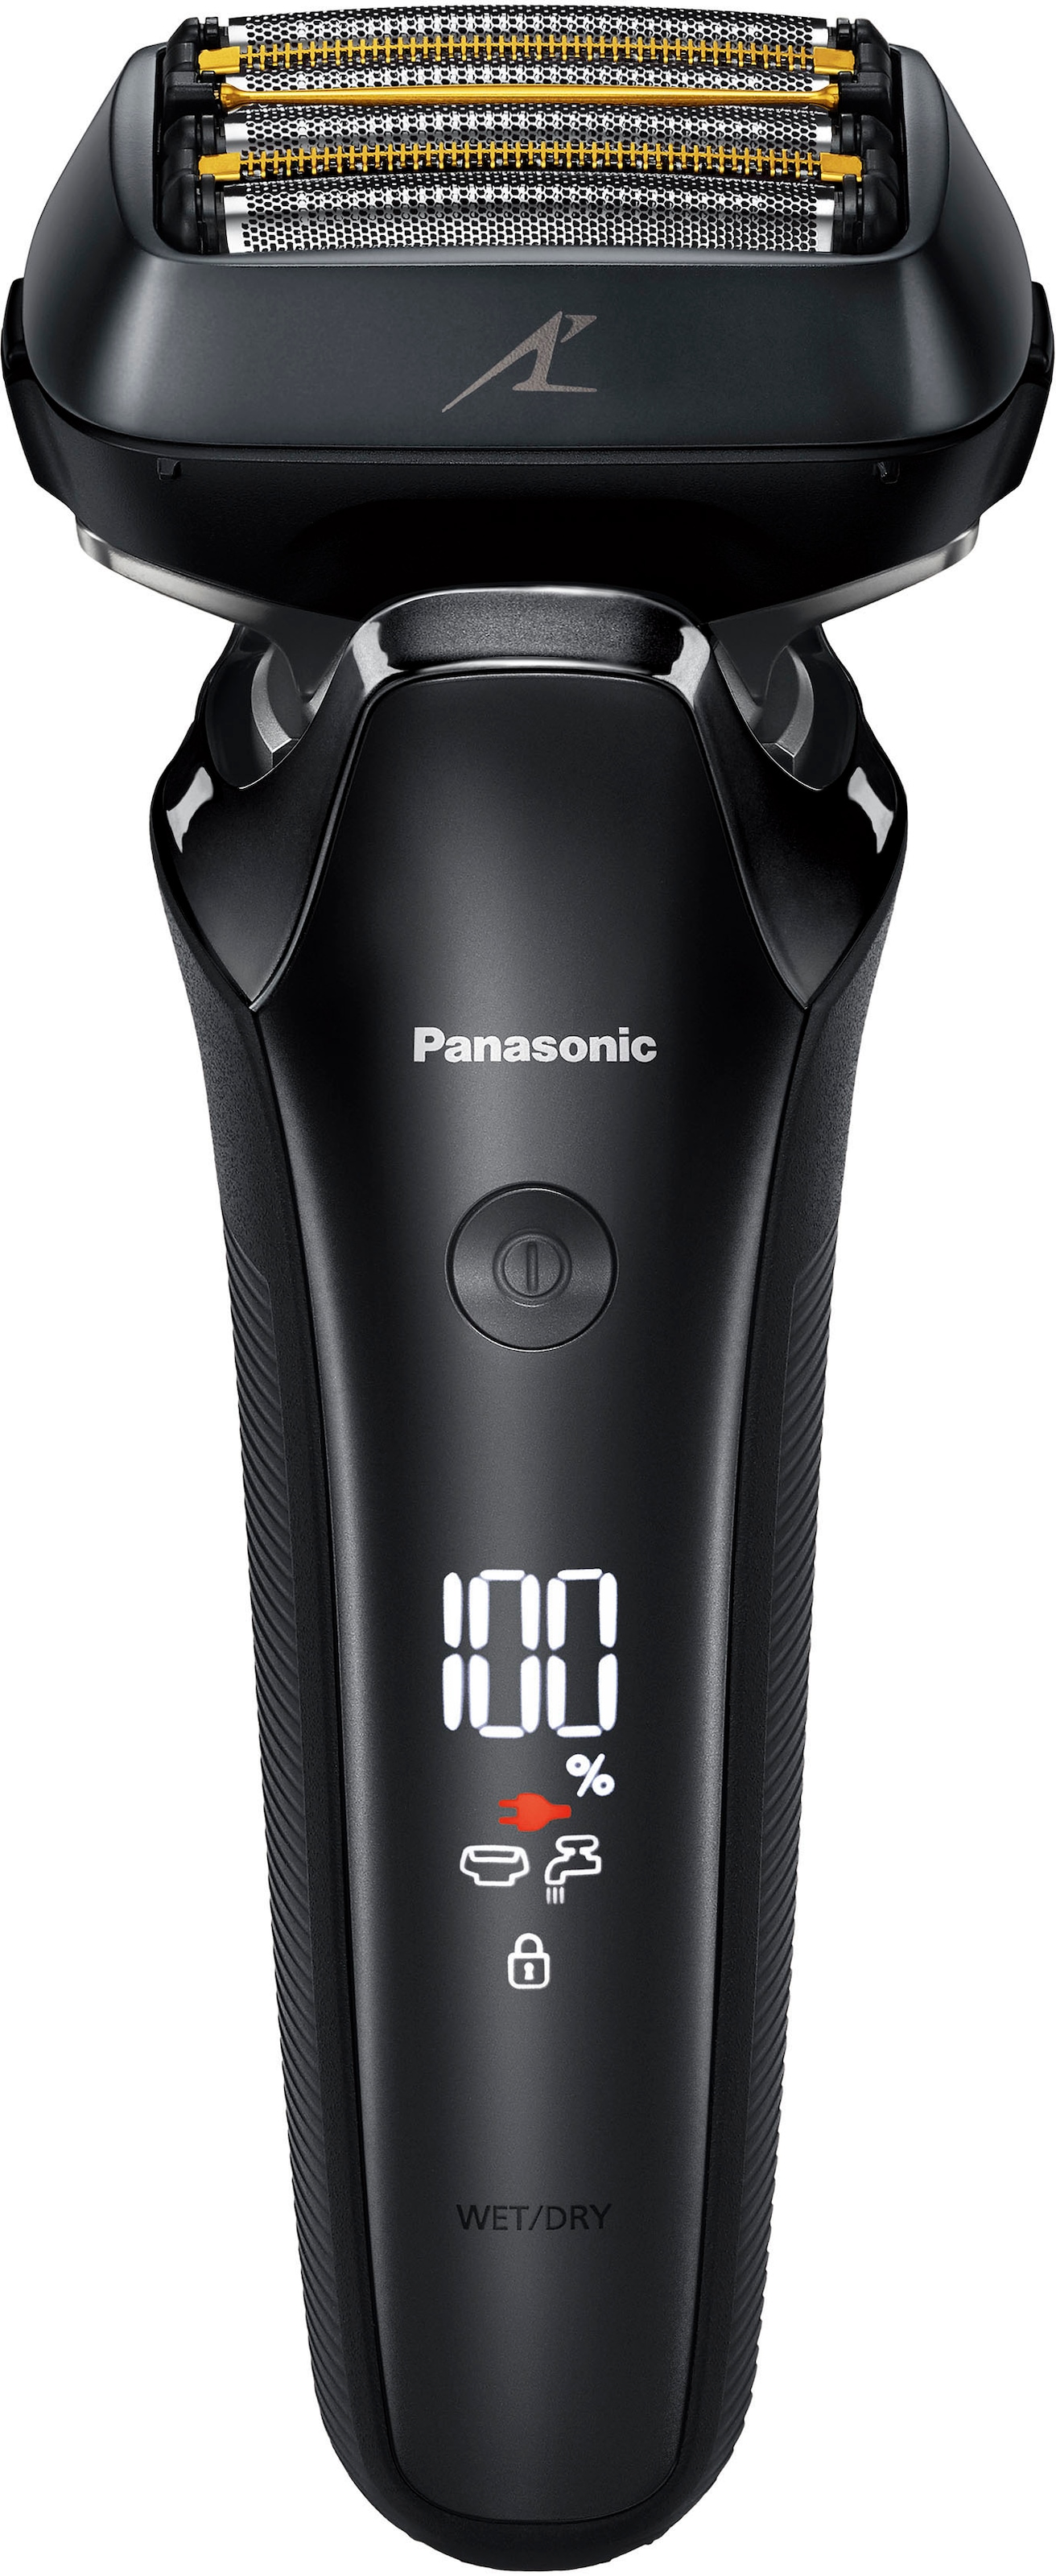 Panasonic Elektrorasierer »Series 900+ Premium Rasierer ES-LS9A«, Reinigungsstation, Langhaartrimmer